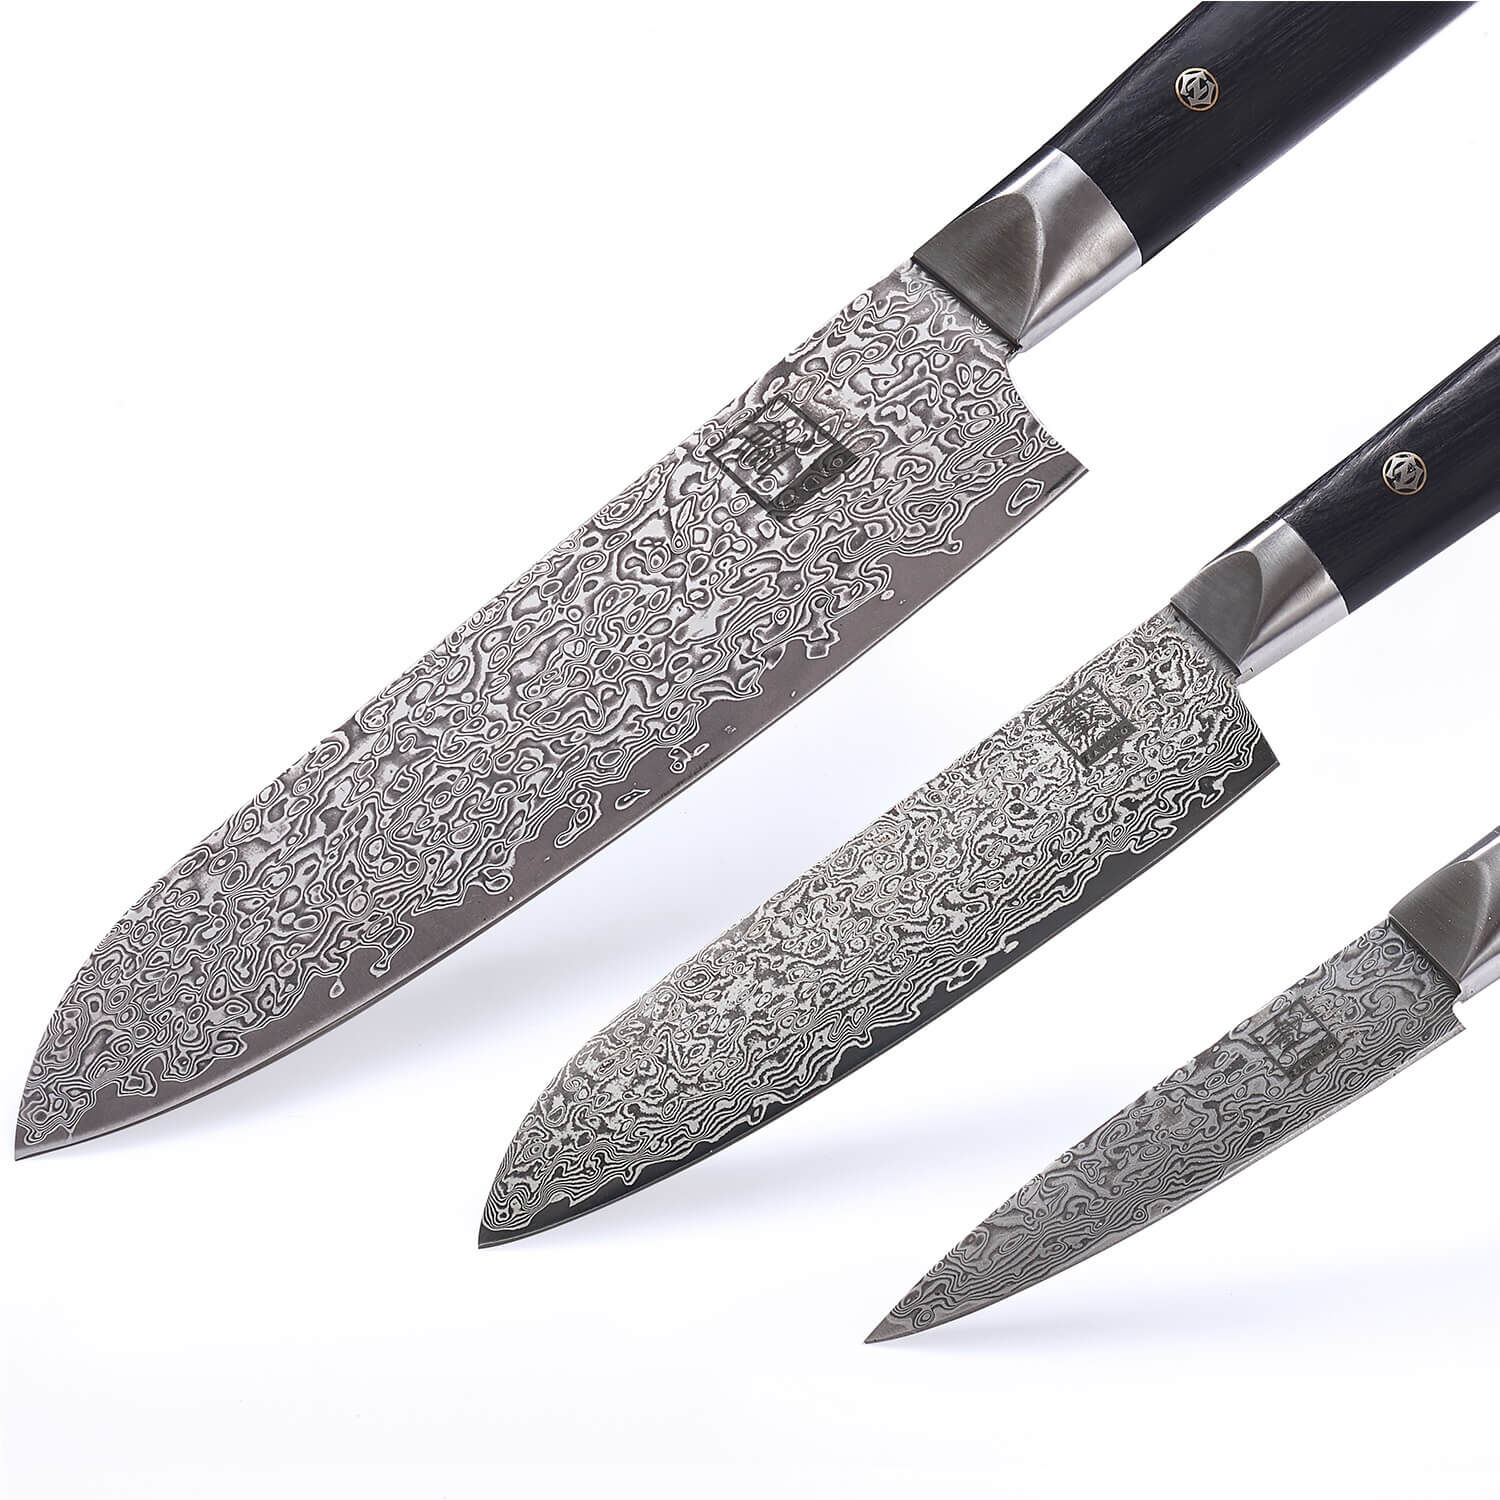 3er Messer-Set Black Edition I 9-18 cm Klingen aus 67 Lagen dunklem Damaststahl I Pakkaholzgriff